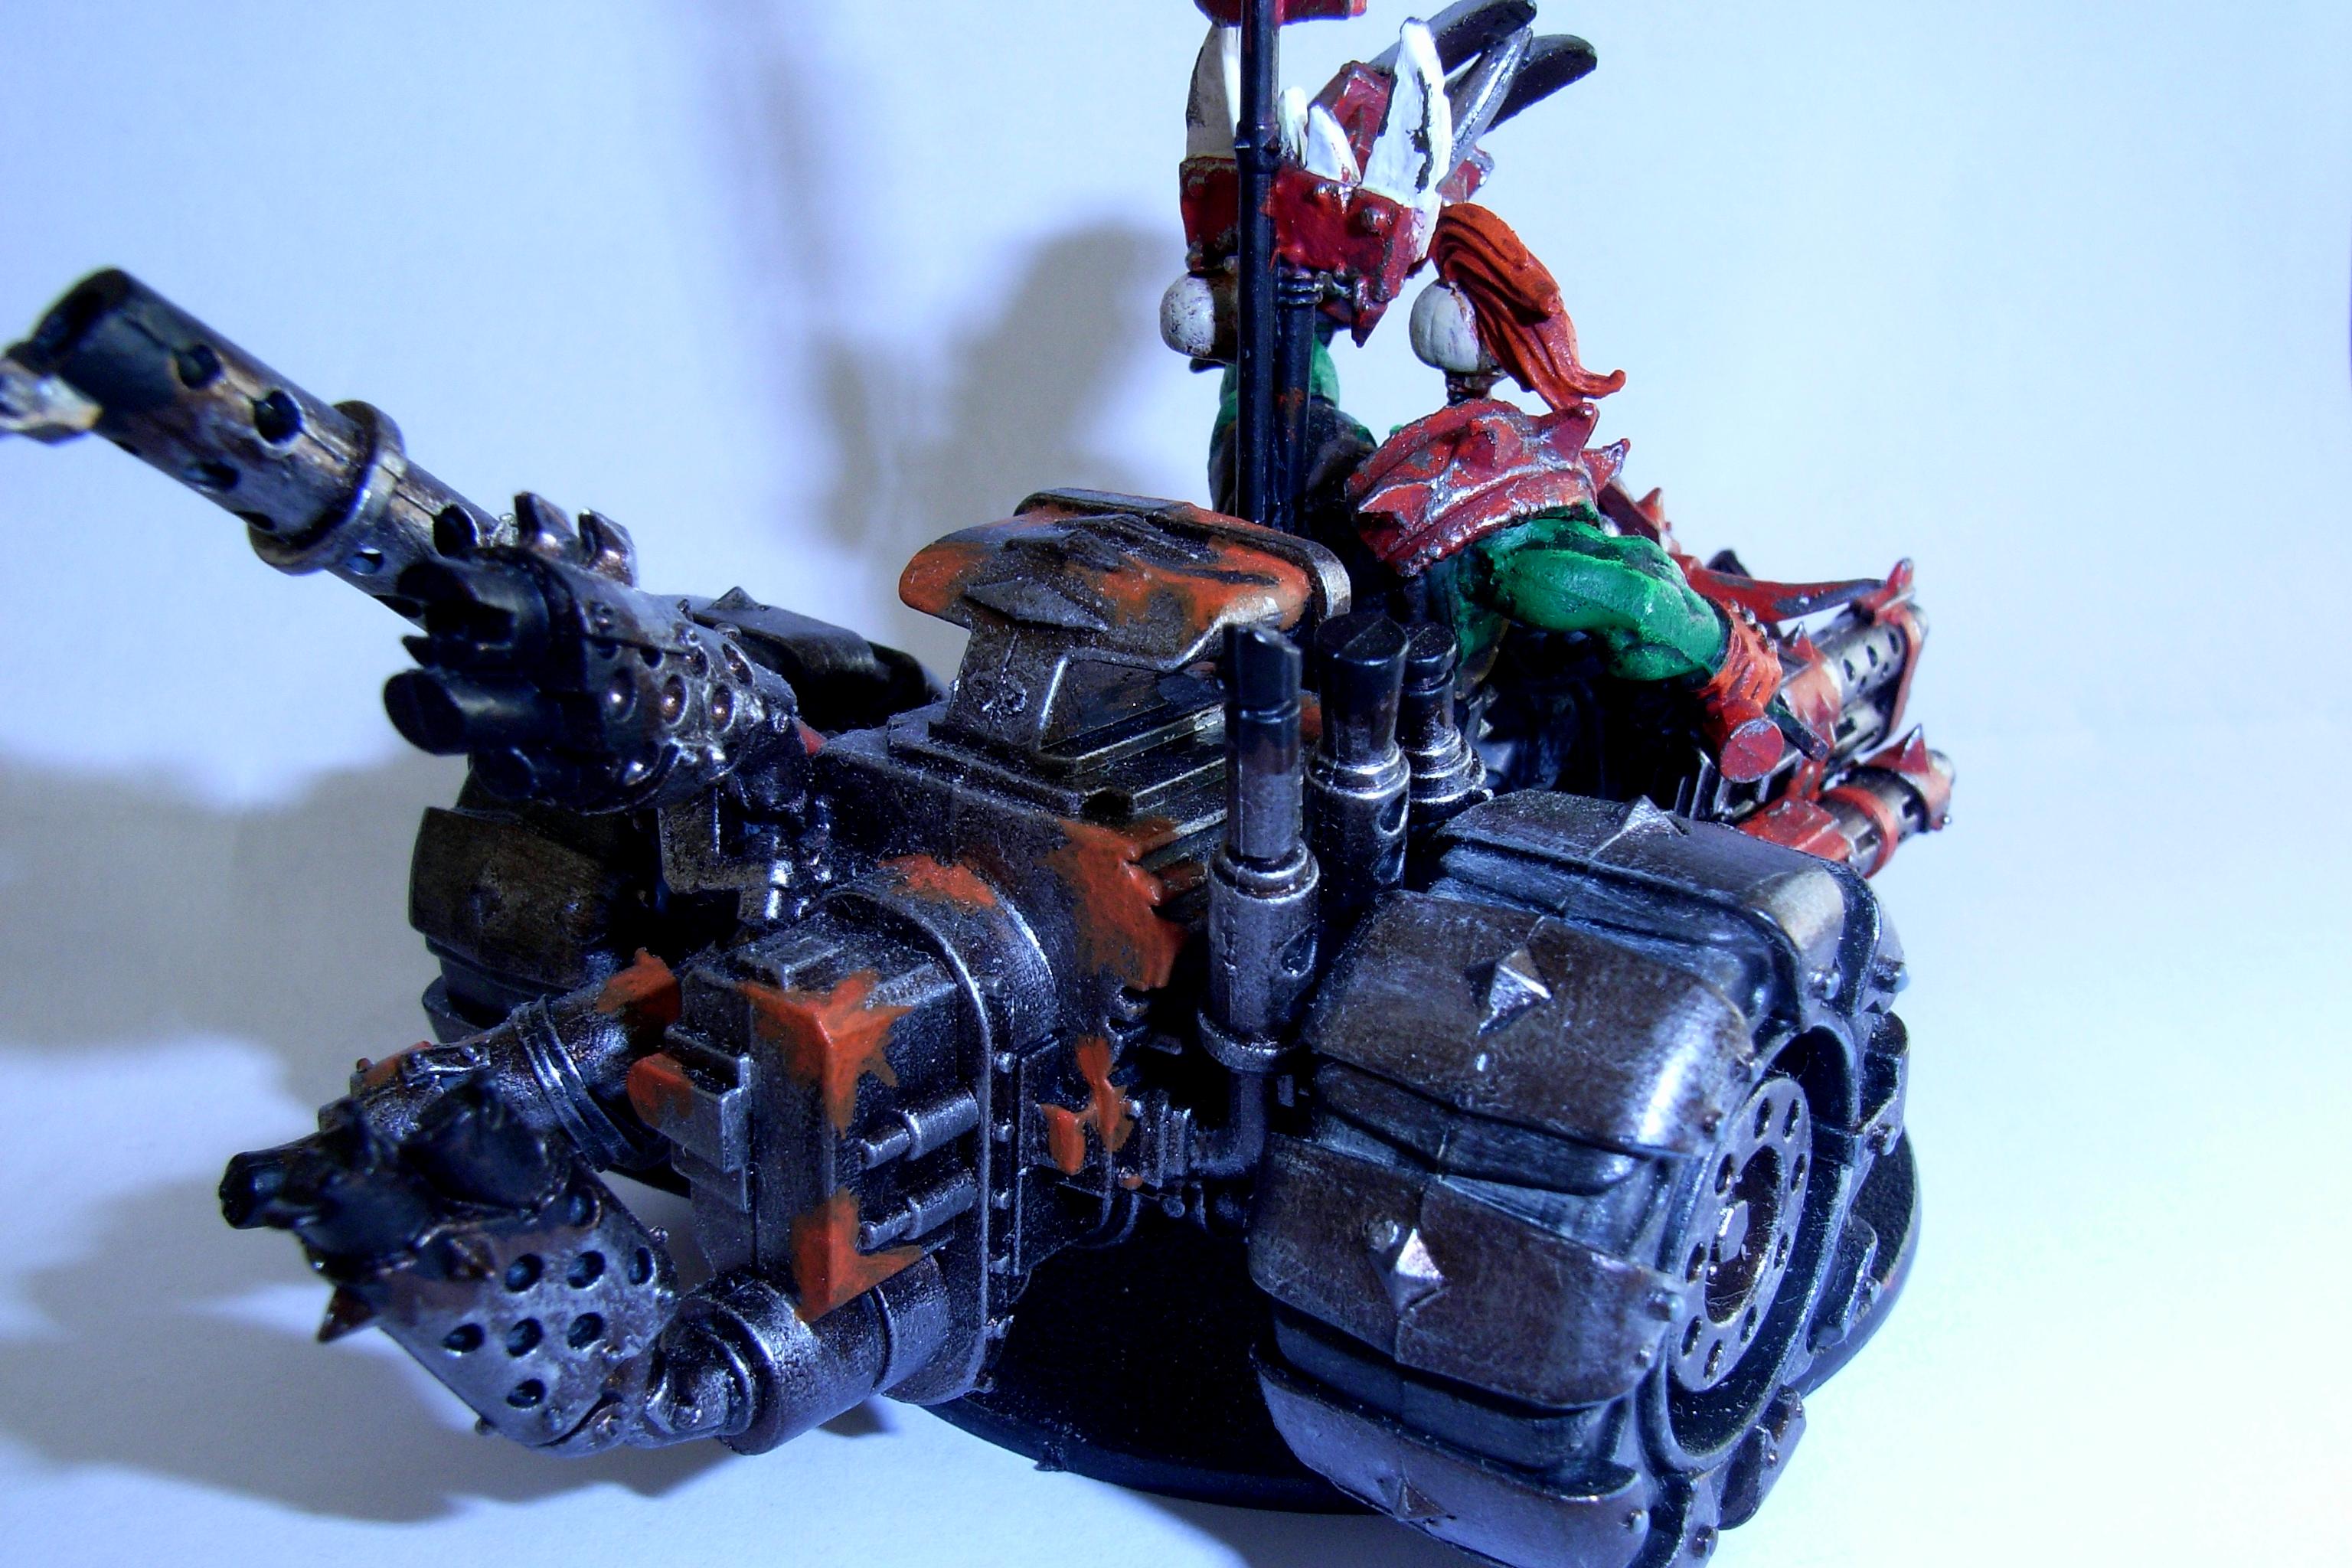 Bike, Orks, Warhammer 40,000